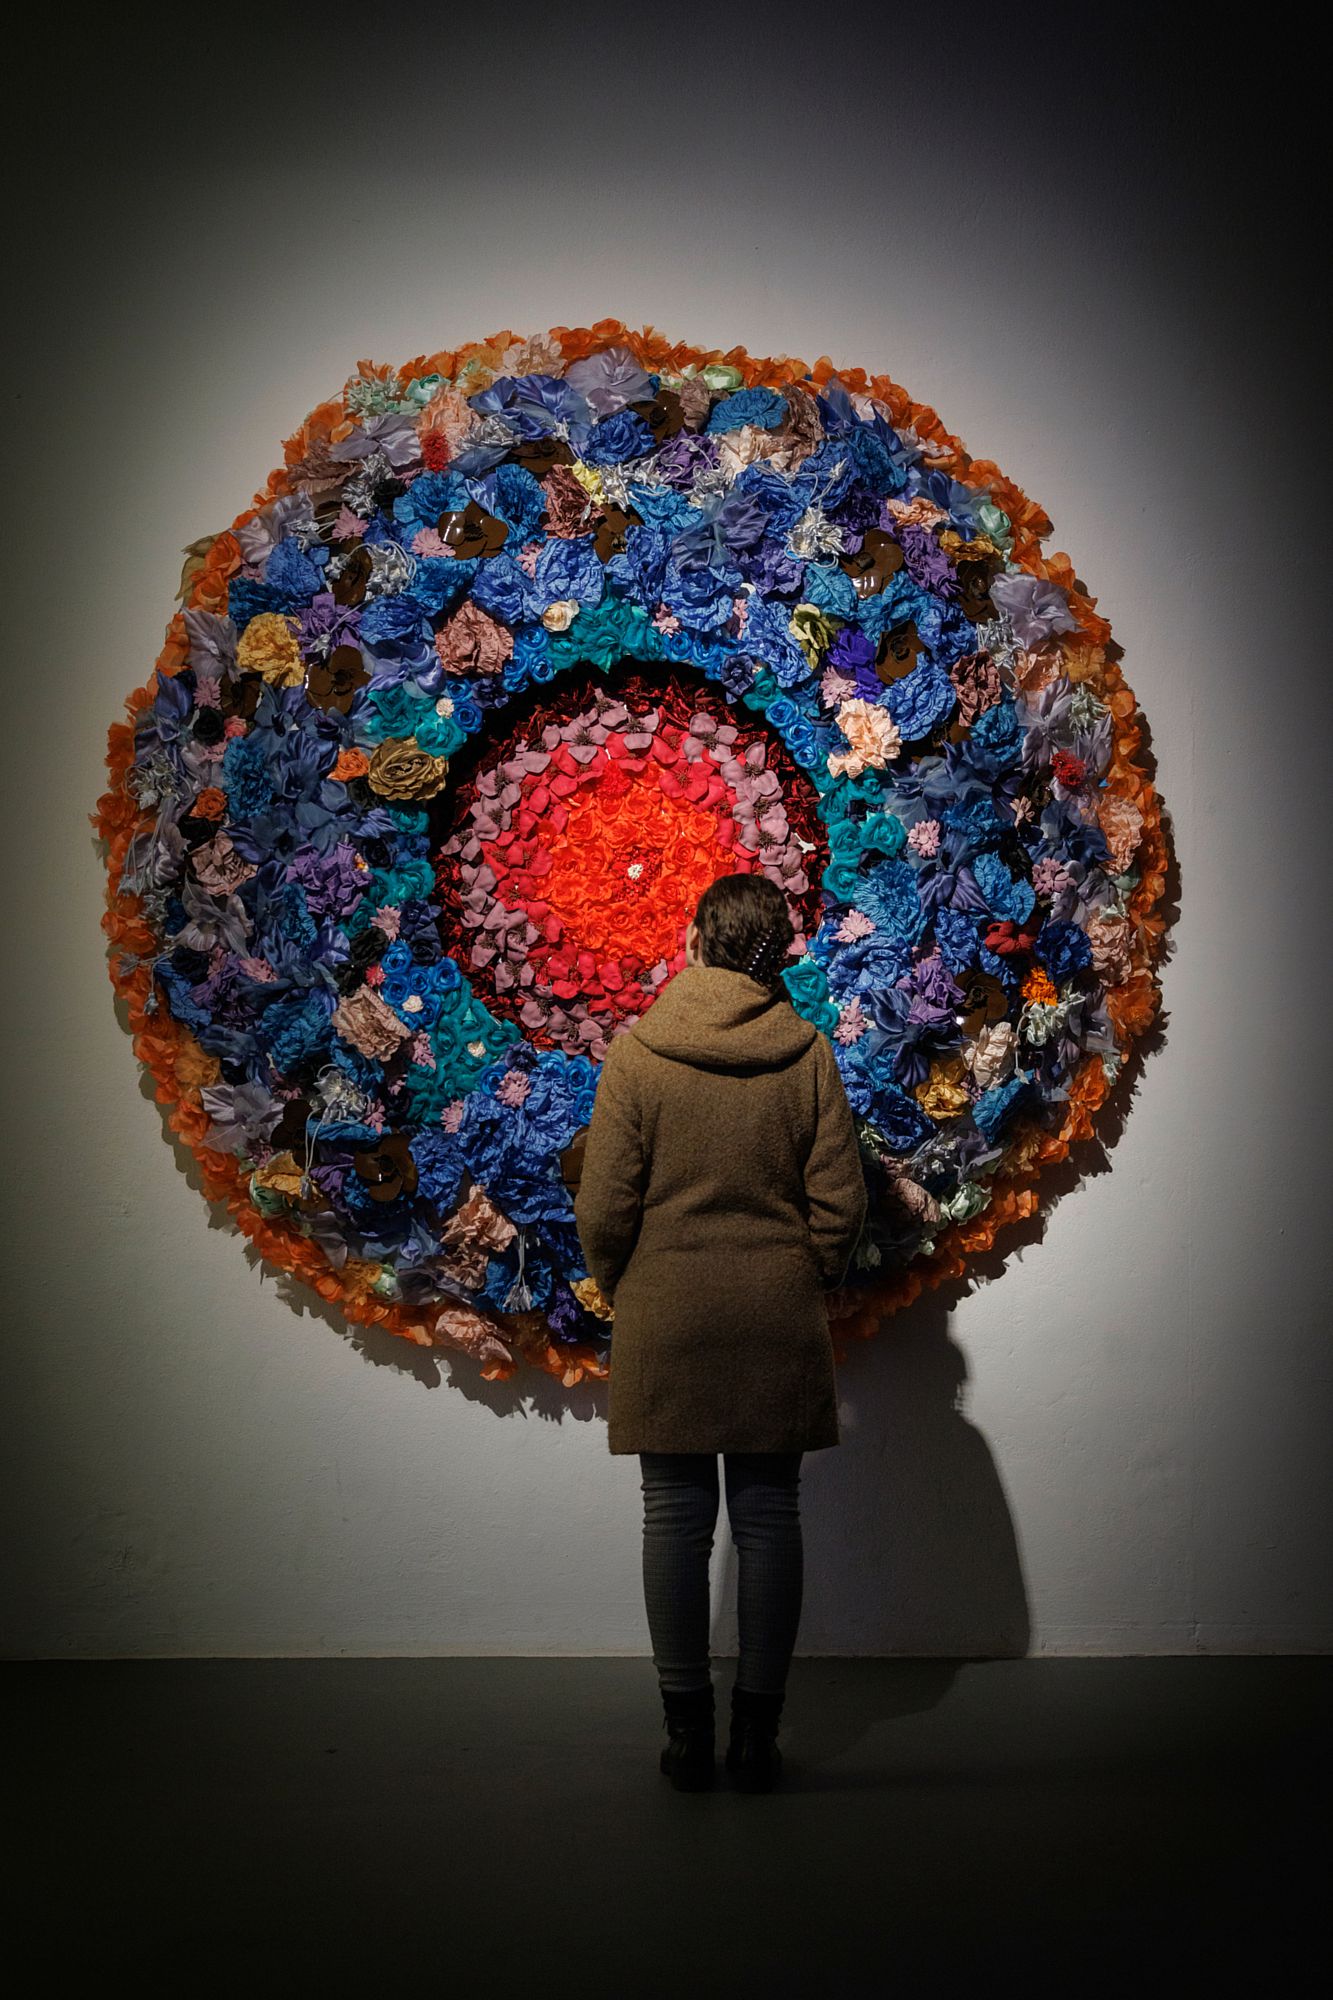 Besucherin in der Ausstellung "Ode an das Handwerk" im Japanischen Palais - Foto: Oliver Killig